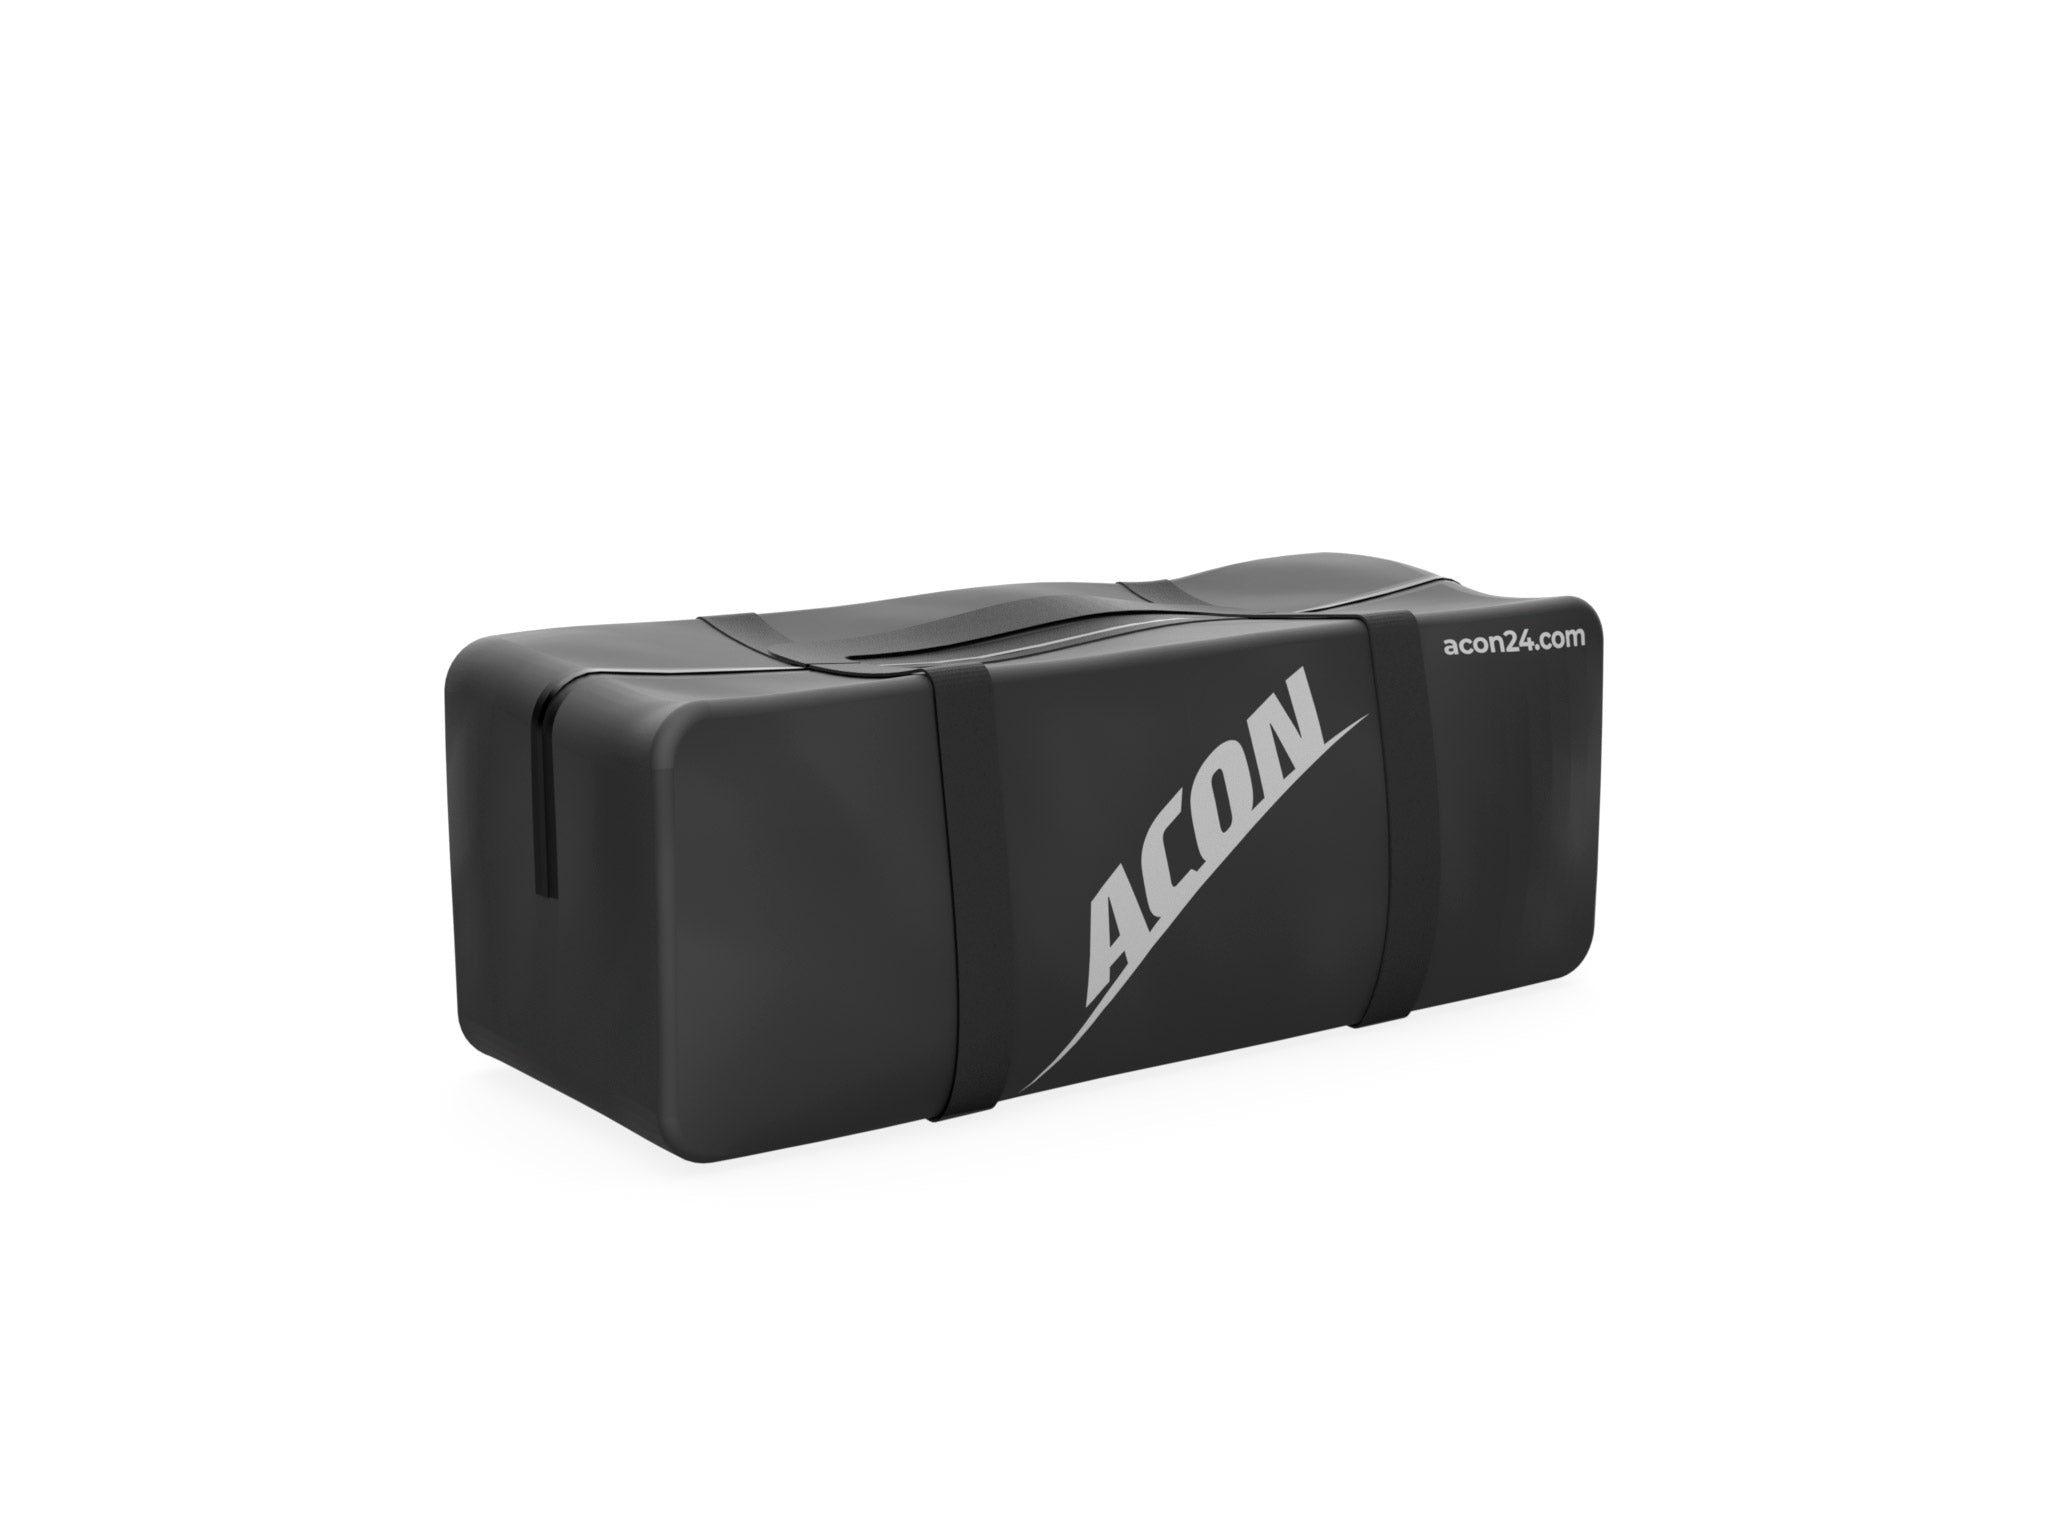 ACON AirTrack 3,0m ja ACON AirBlock pakettiin sisältyy kantolaukku - acon-fi